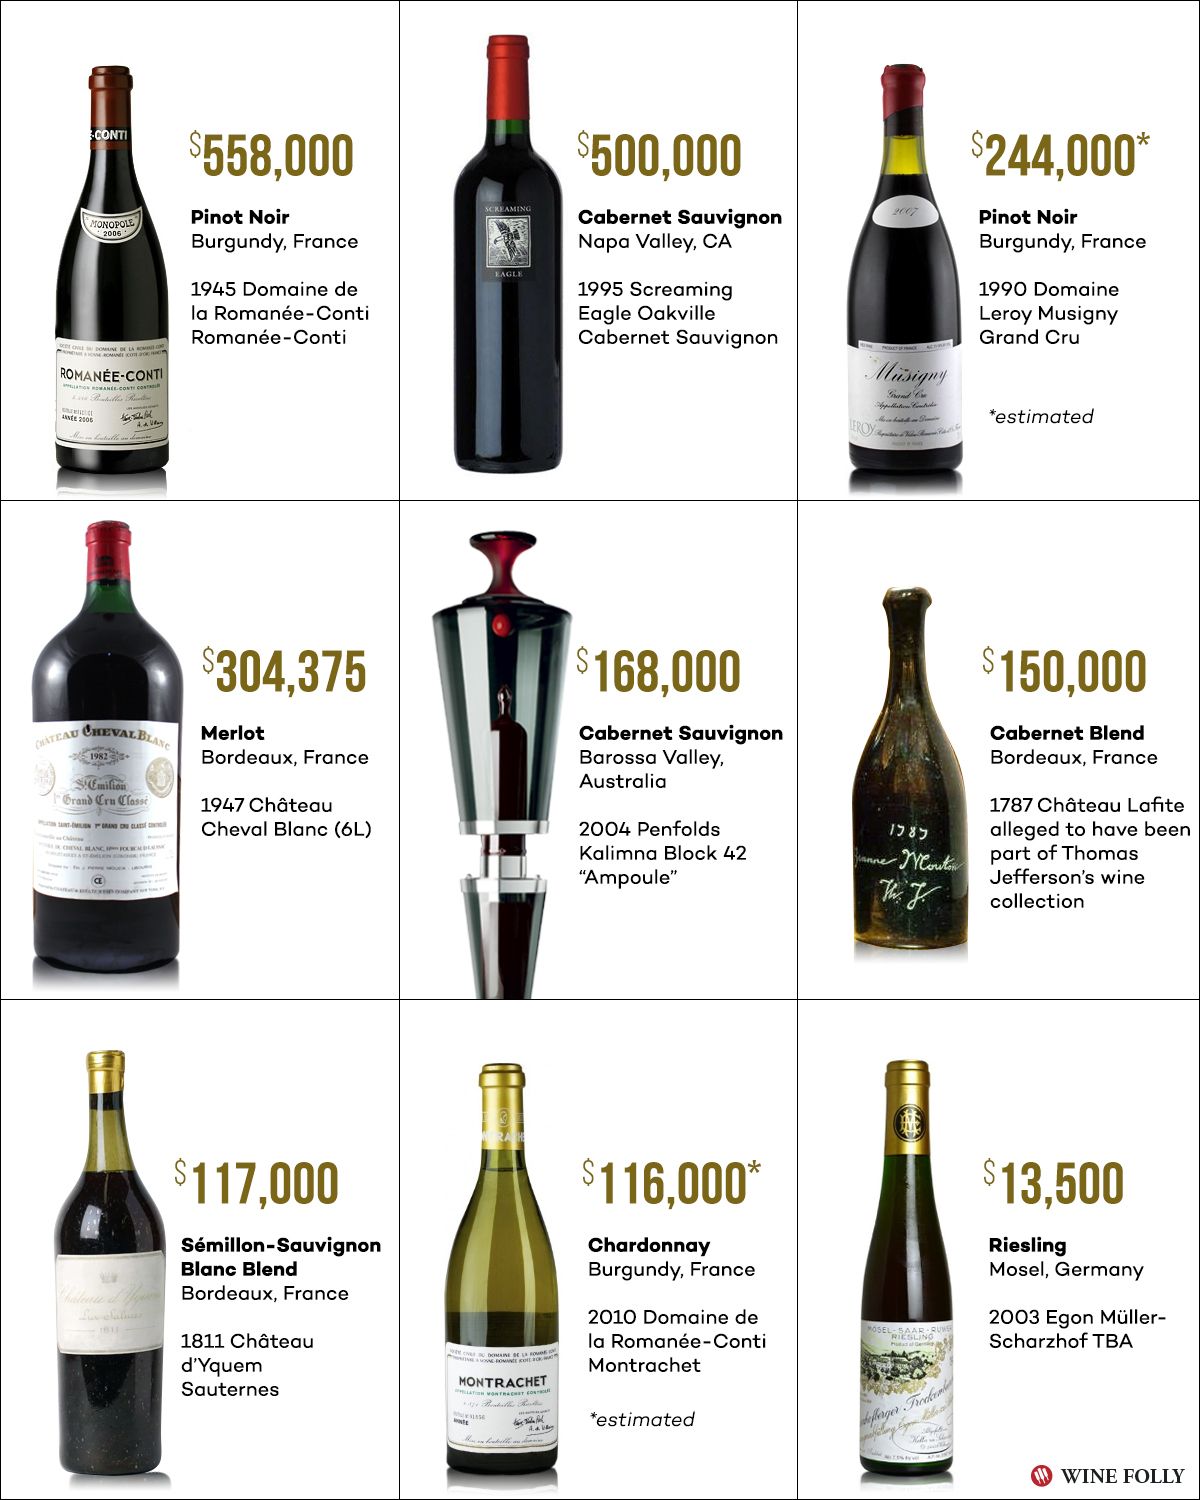 9 brangiausi vynai pasaulyje